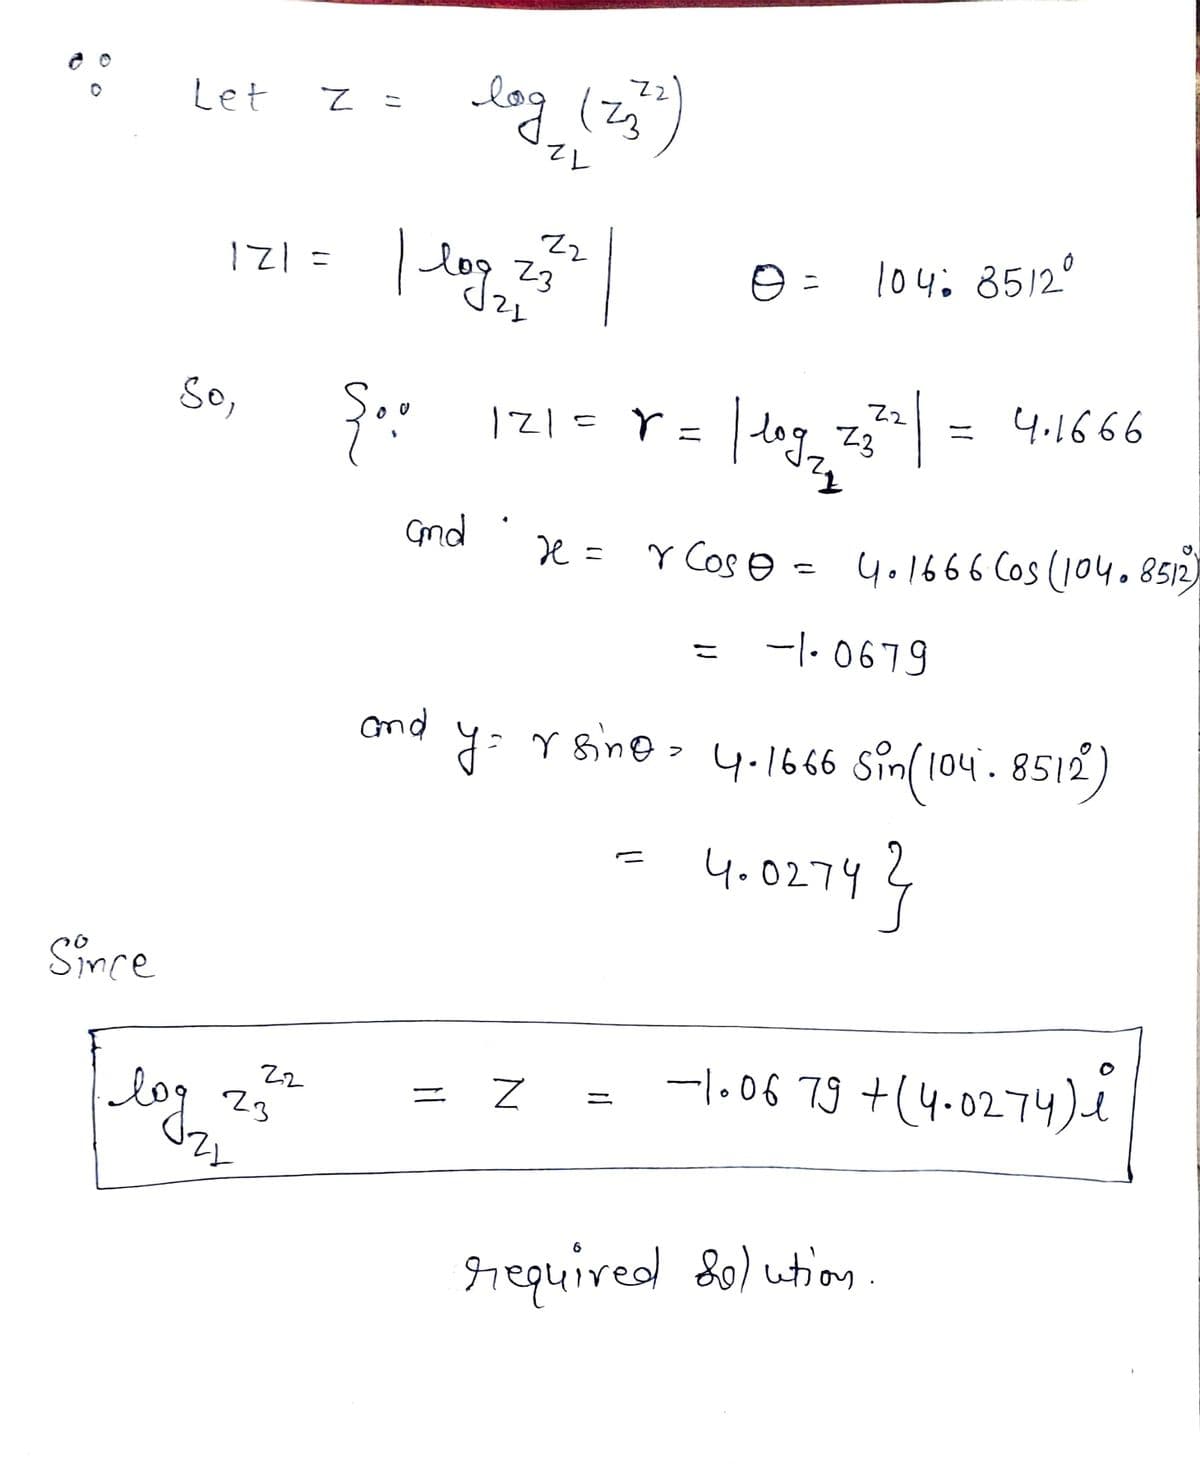 Let
log (zj
12
| log,
121=
104: 8512°
23
So,
| dog, z = 4.1666
121=r
ニ
Gnd
e = Y Cos e =
4.1666 Cos (104.8512)
-|- 0679
こ
nd
y: Y sine - 4.166 sin(104. 8512)
(04.8512
4.0274?
Since
-l.06 79 +(4.0274)e
log
Z2
ニ
23
required S0) ution.
